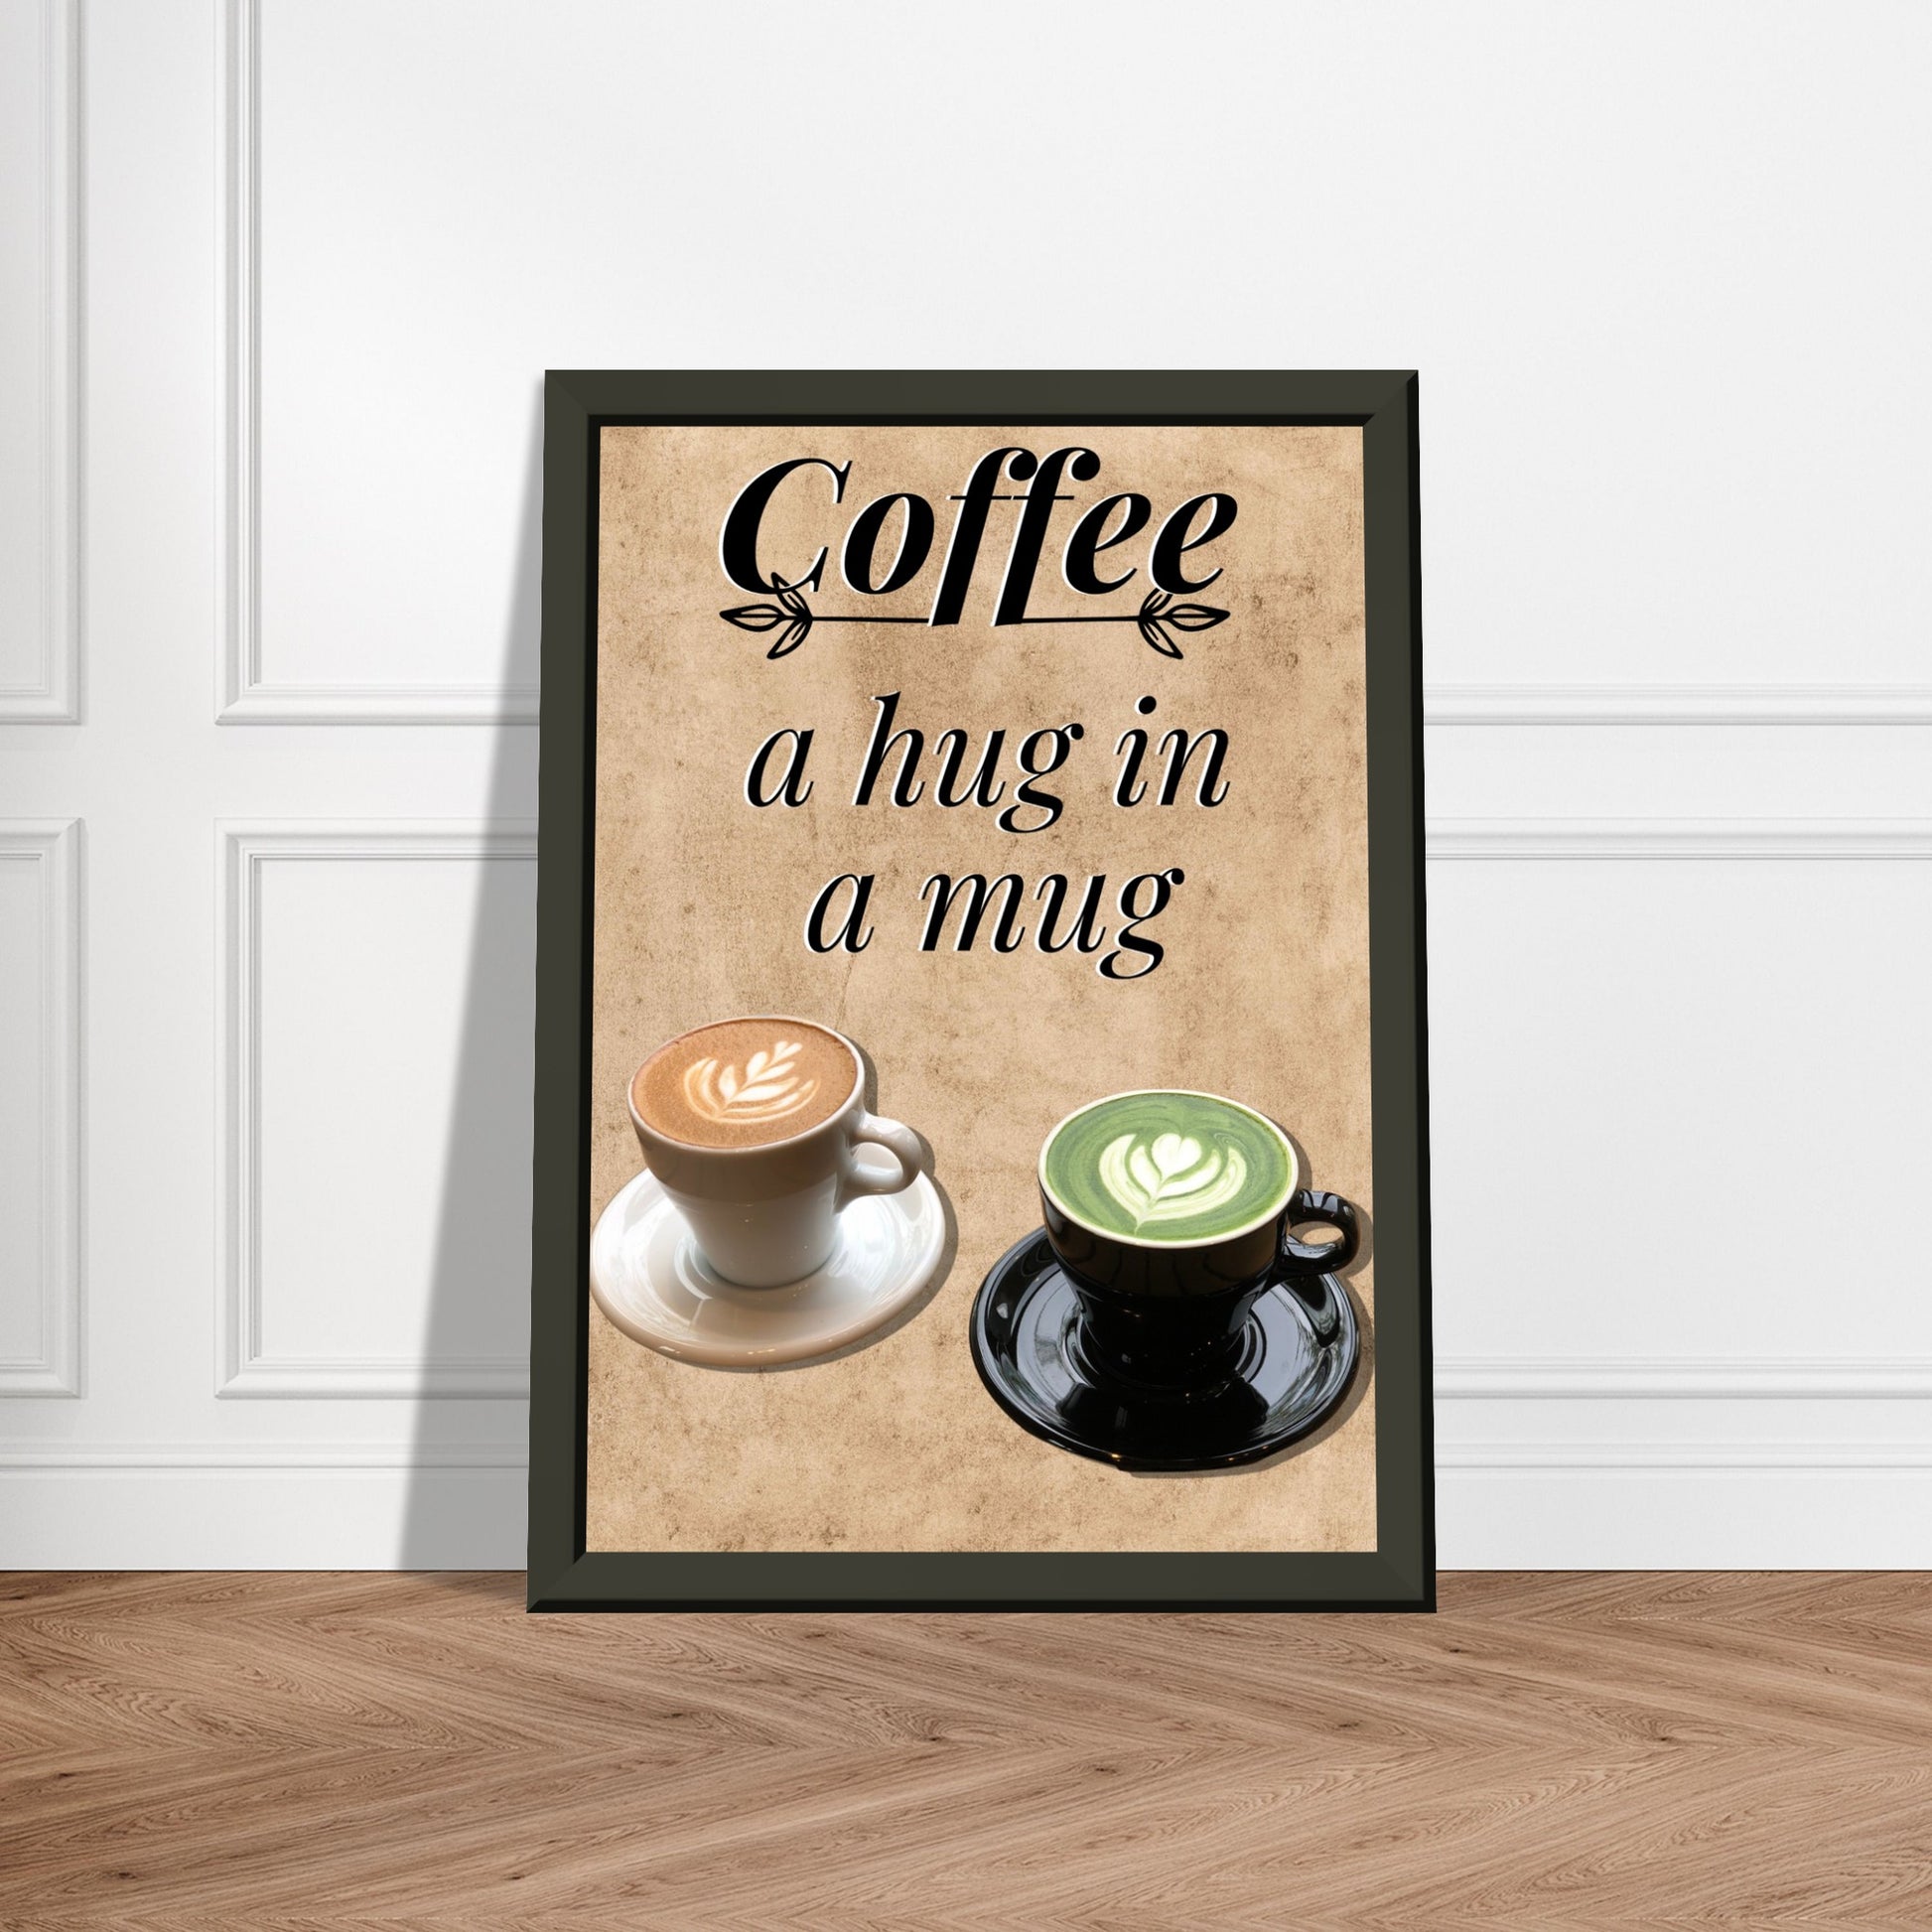 Eingerahmtes Bild mit der Überschrift: "Coffee" und dem Titel: "a hug in a mug" mit zwei Tassen Kaffee auf einem Beigen Hintergrund an einer weißen Wand lehnend